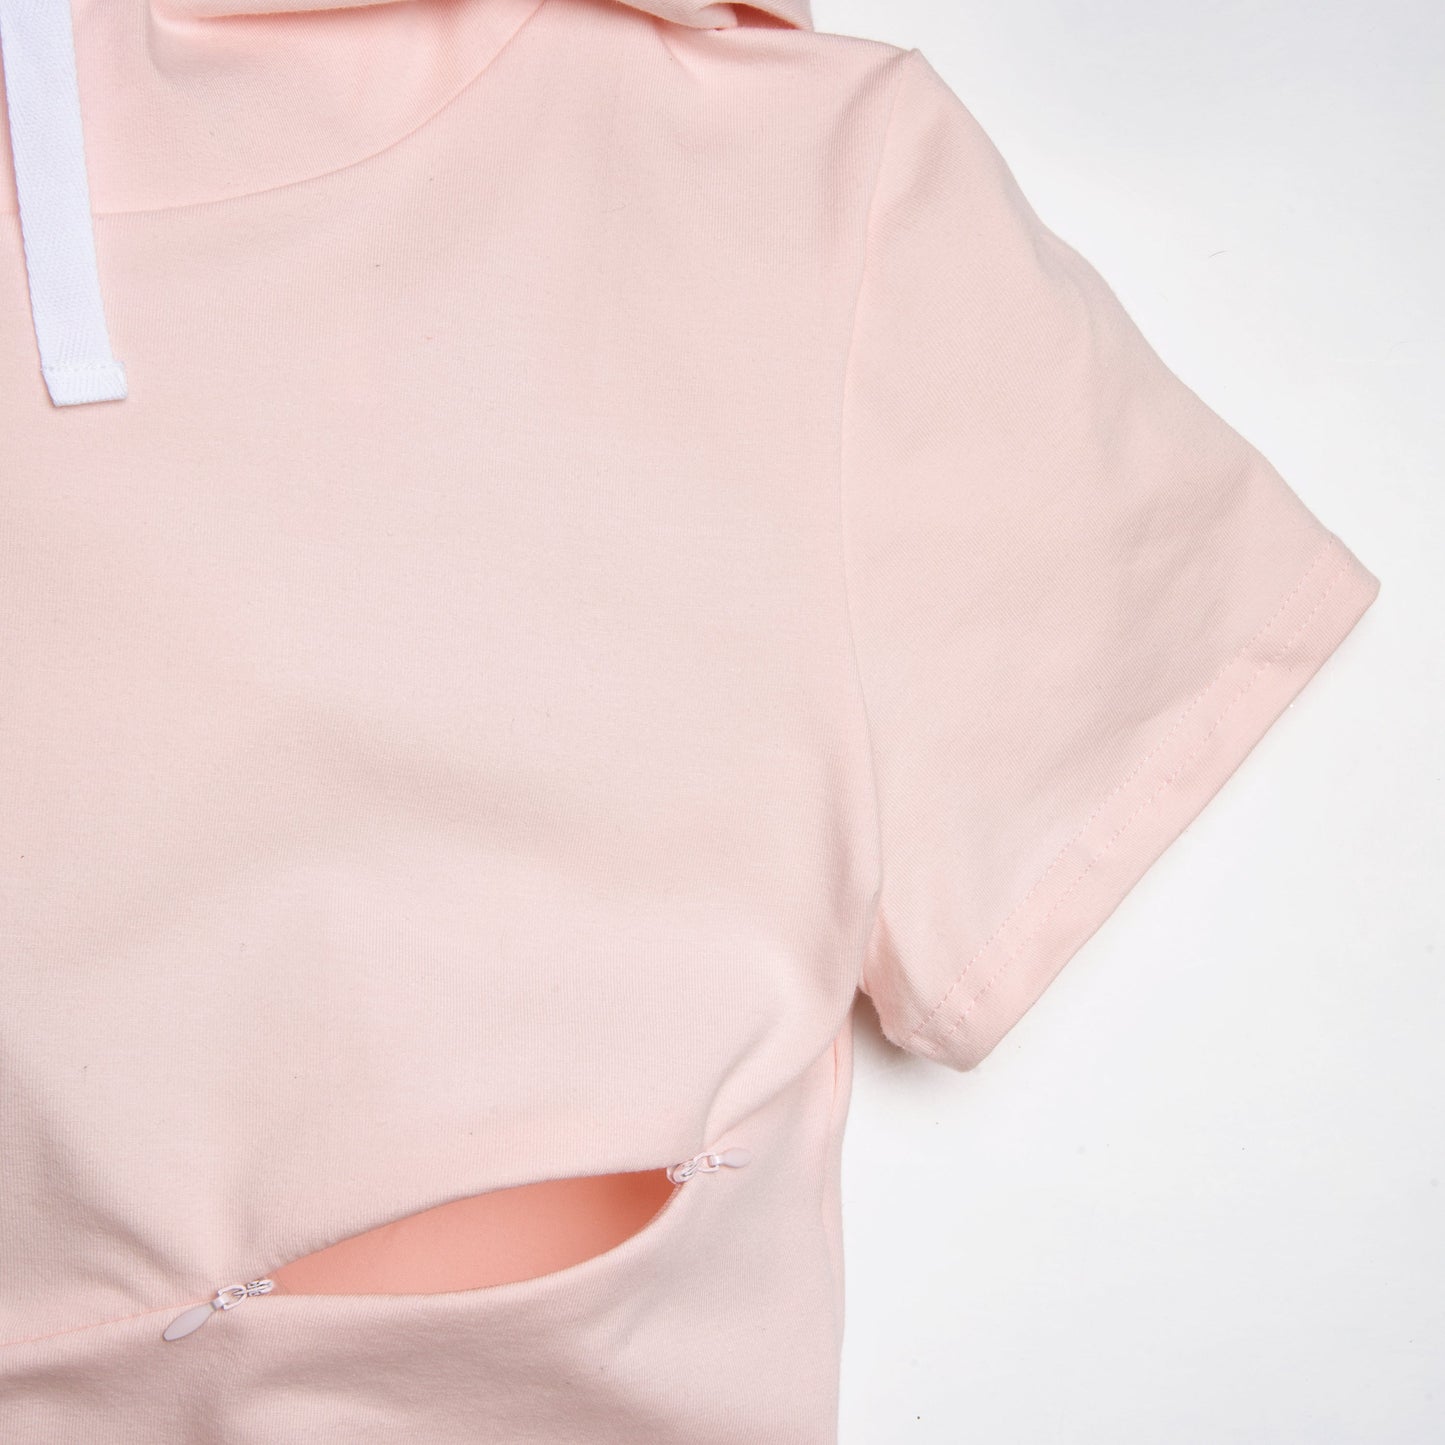 1X - ROSE robe maternité, allaitement, postpartum - Léger défaut ( réf #448 )